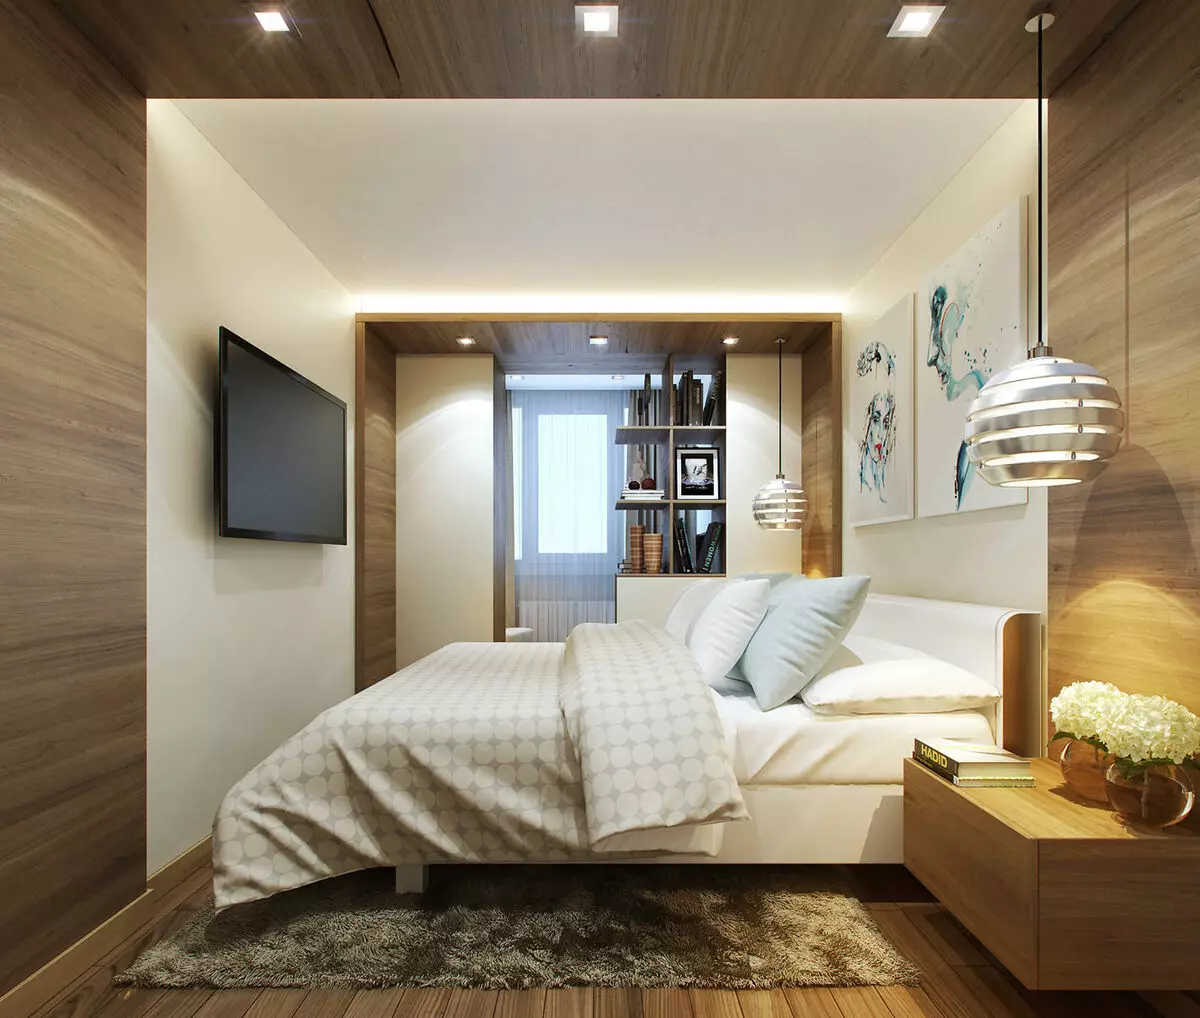 Miegamojo svetainė (112 nuotraukos): Interjero dizaino parinktys tos pačios patalpos interjero. Modulinių baldų ir tapetų, išdėstymo ir projektų pasirinkimas 9818_90